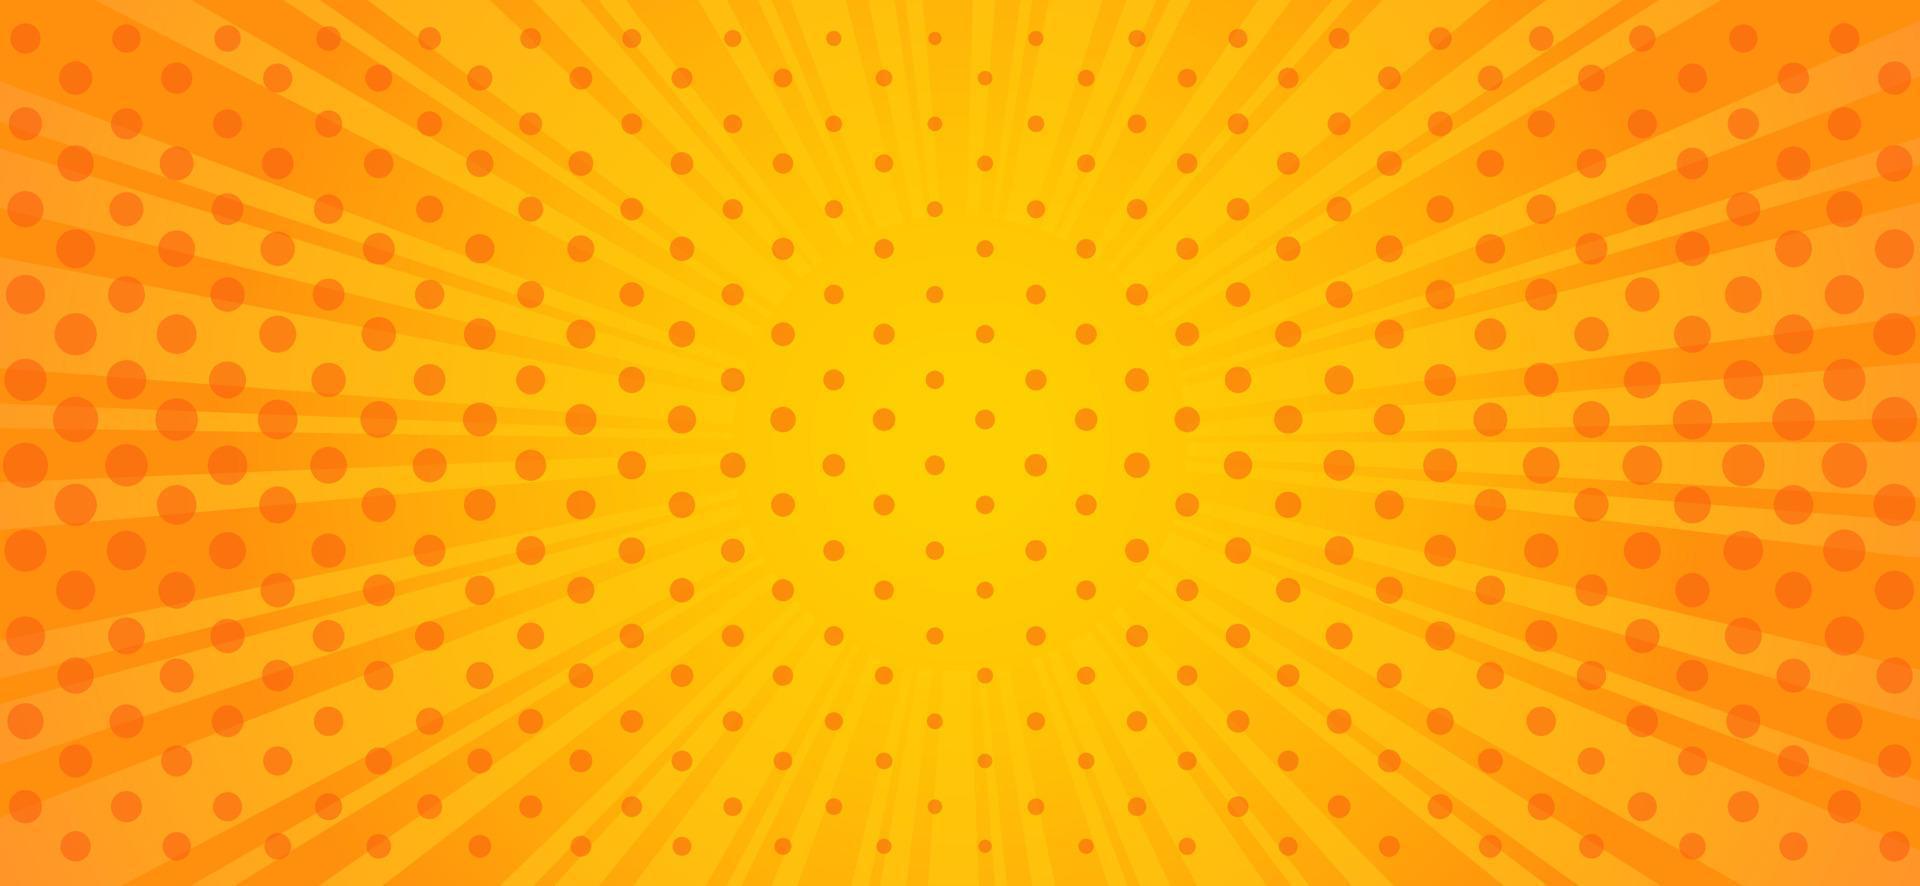 rechthoekige oranje achtergrond met gele stralen en stippen. vector